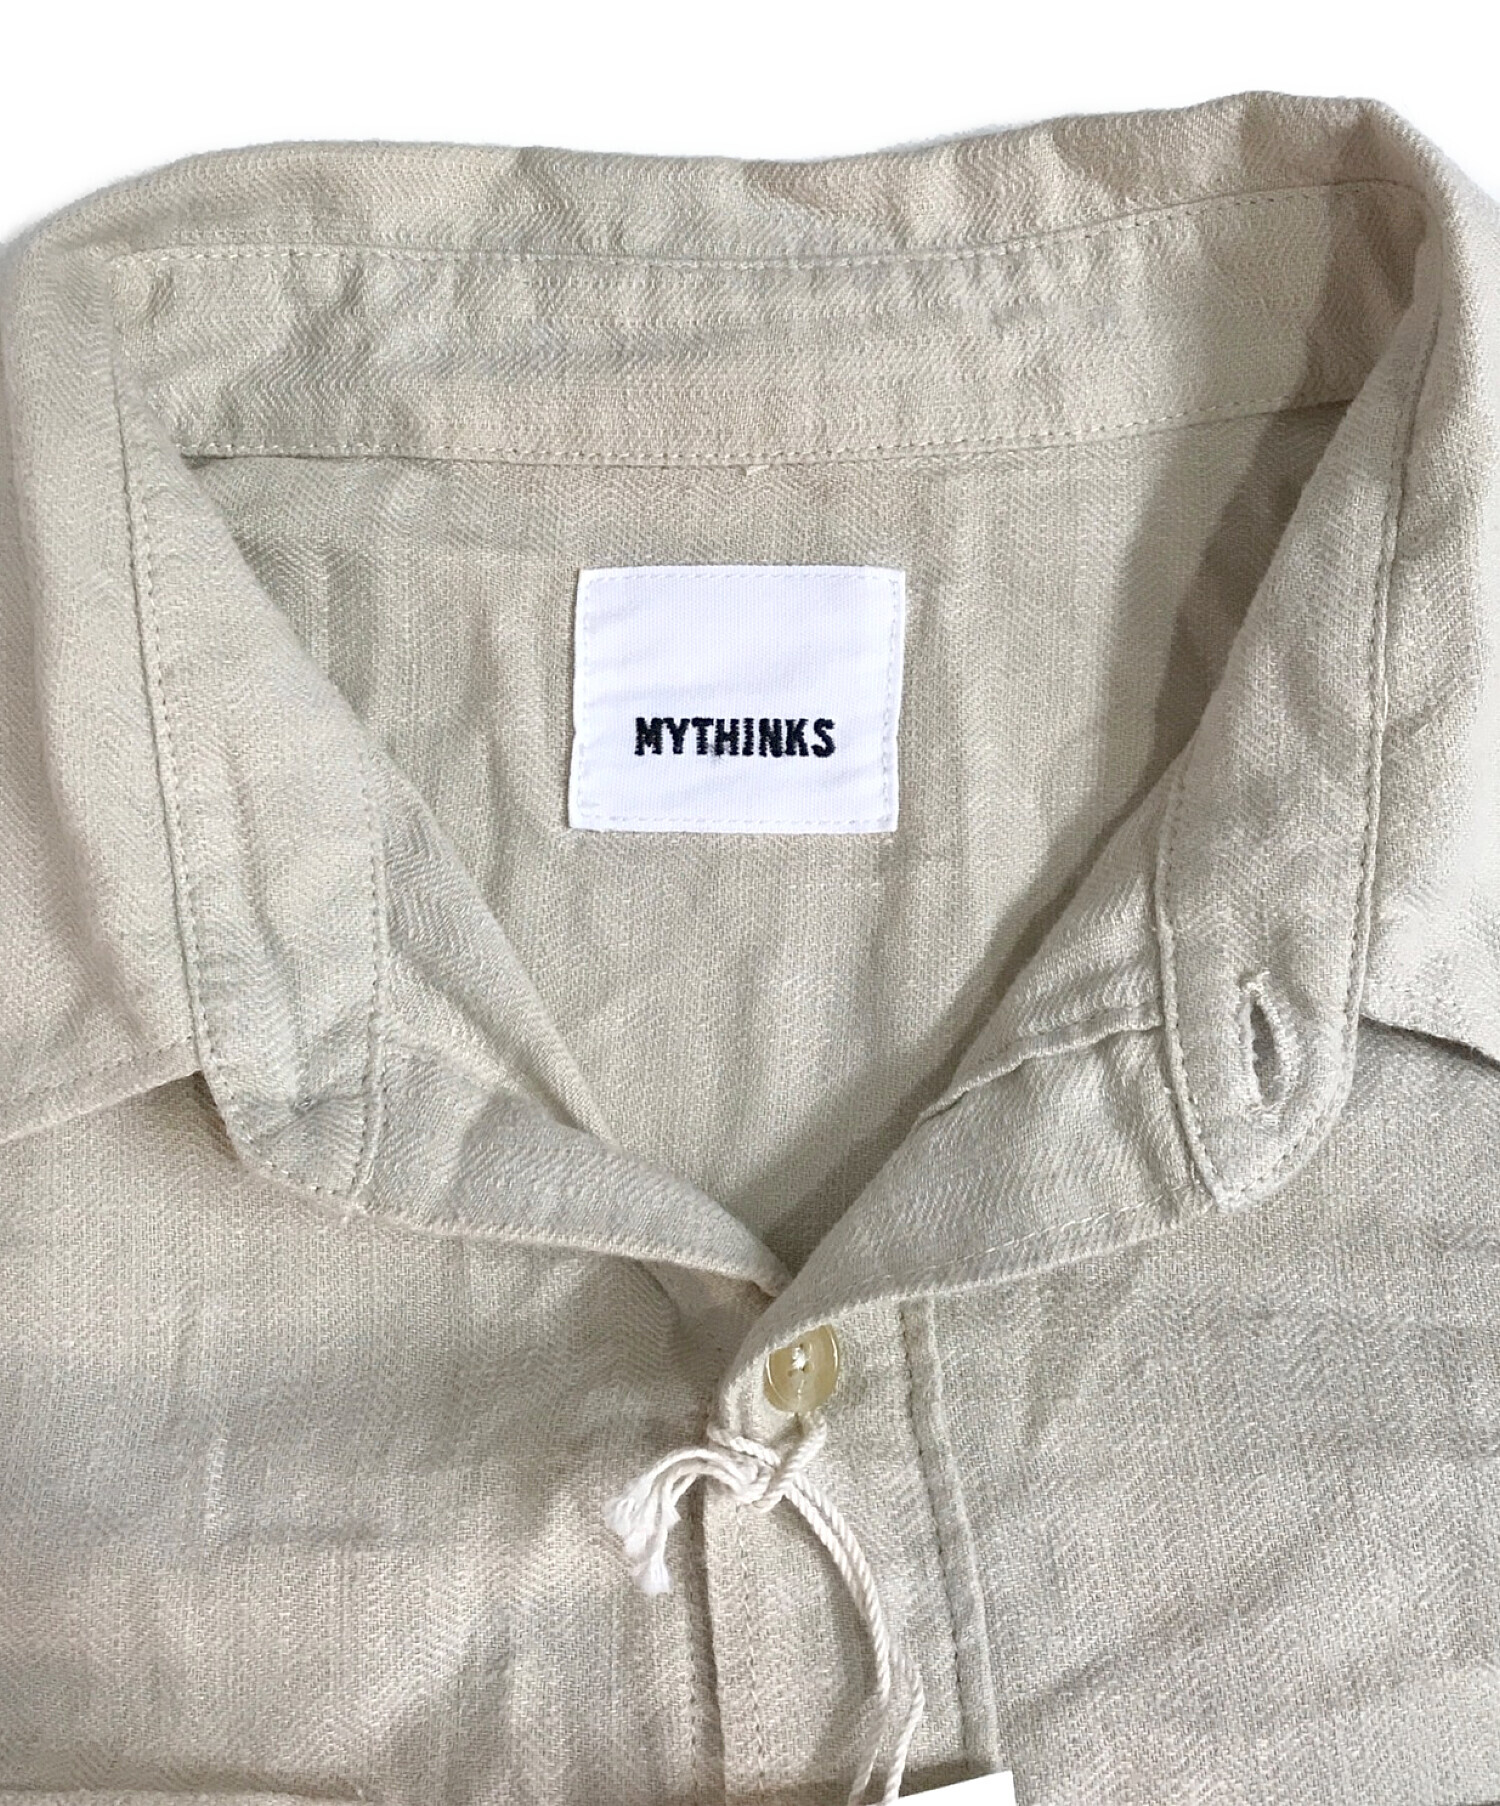 MYTHINKS (マイシンクス) ヘリンボーンシャツ ベージュ サイズ:M 未使用品